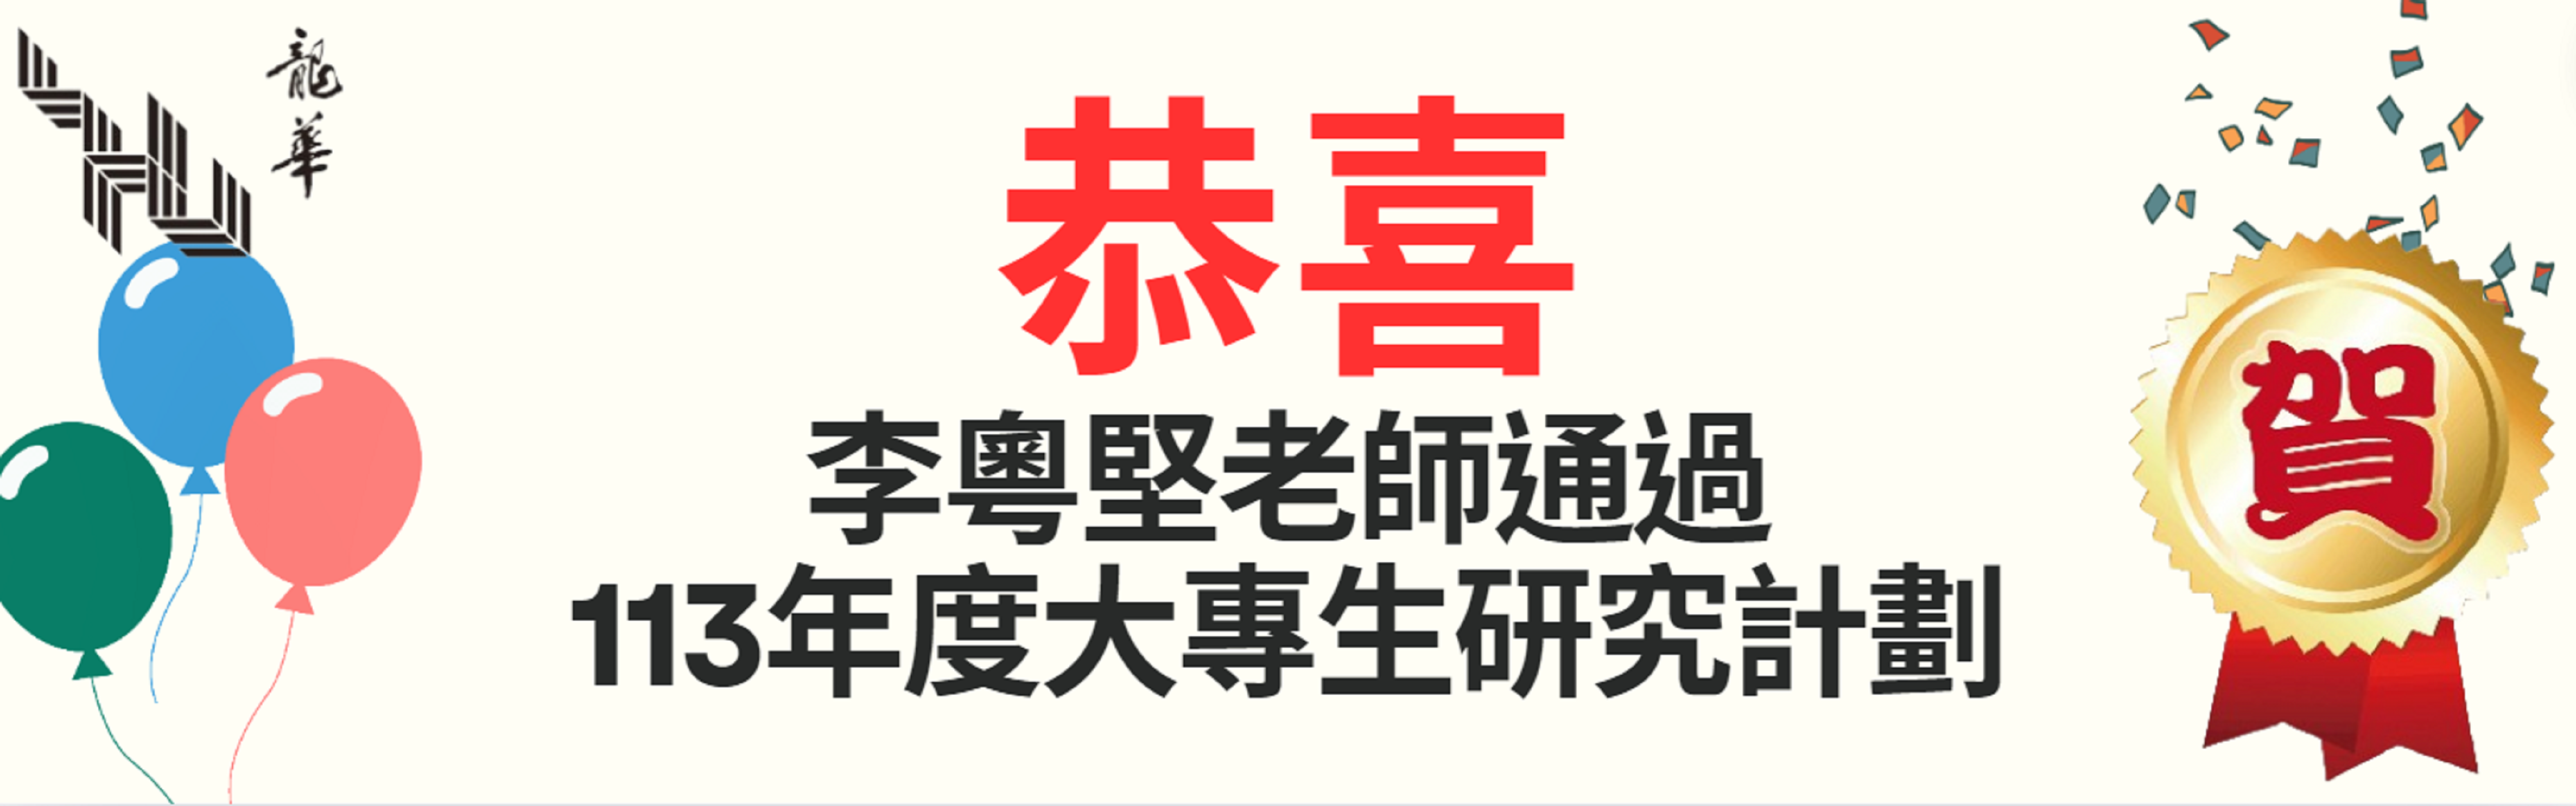 恭喜李粵堅老師通過113年度大專生研究計劃